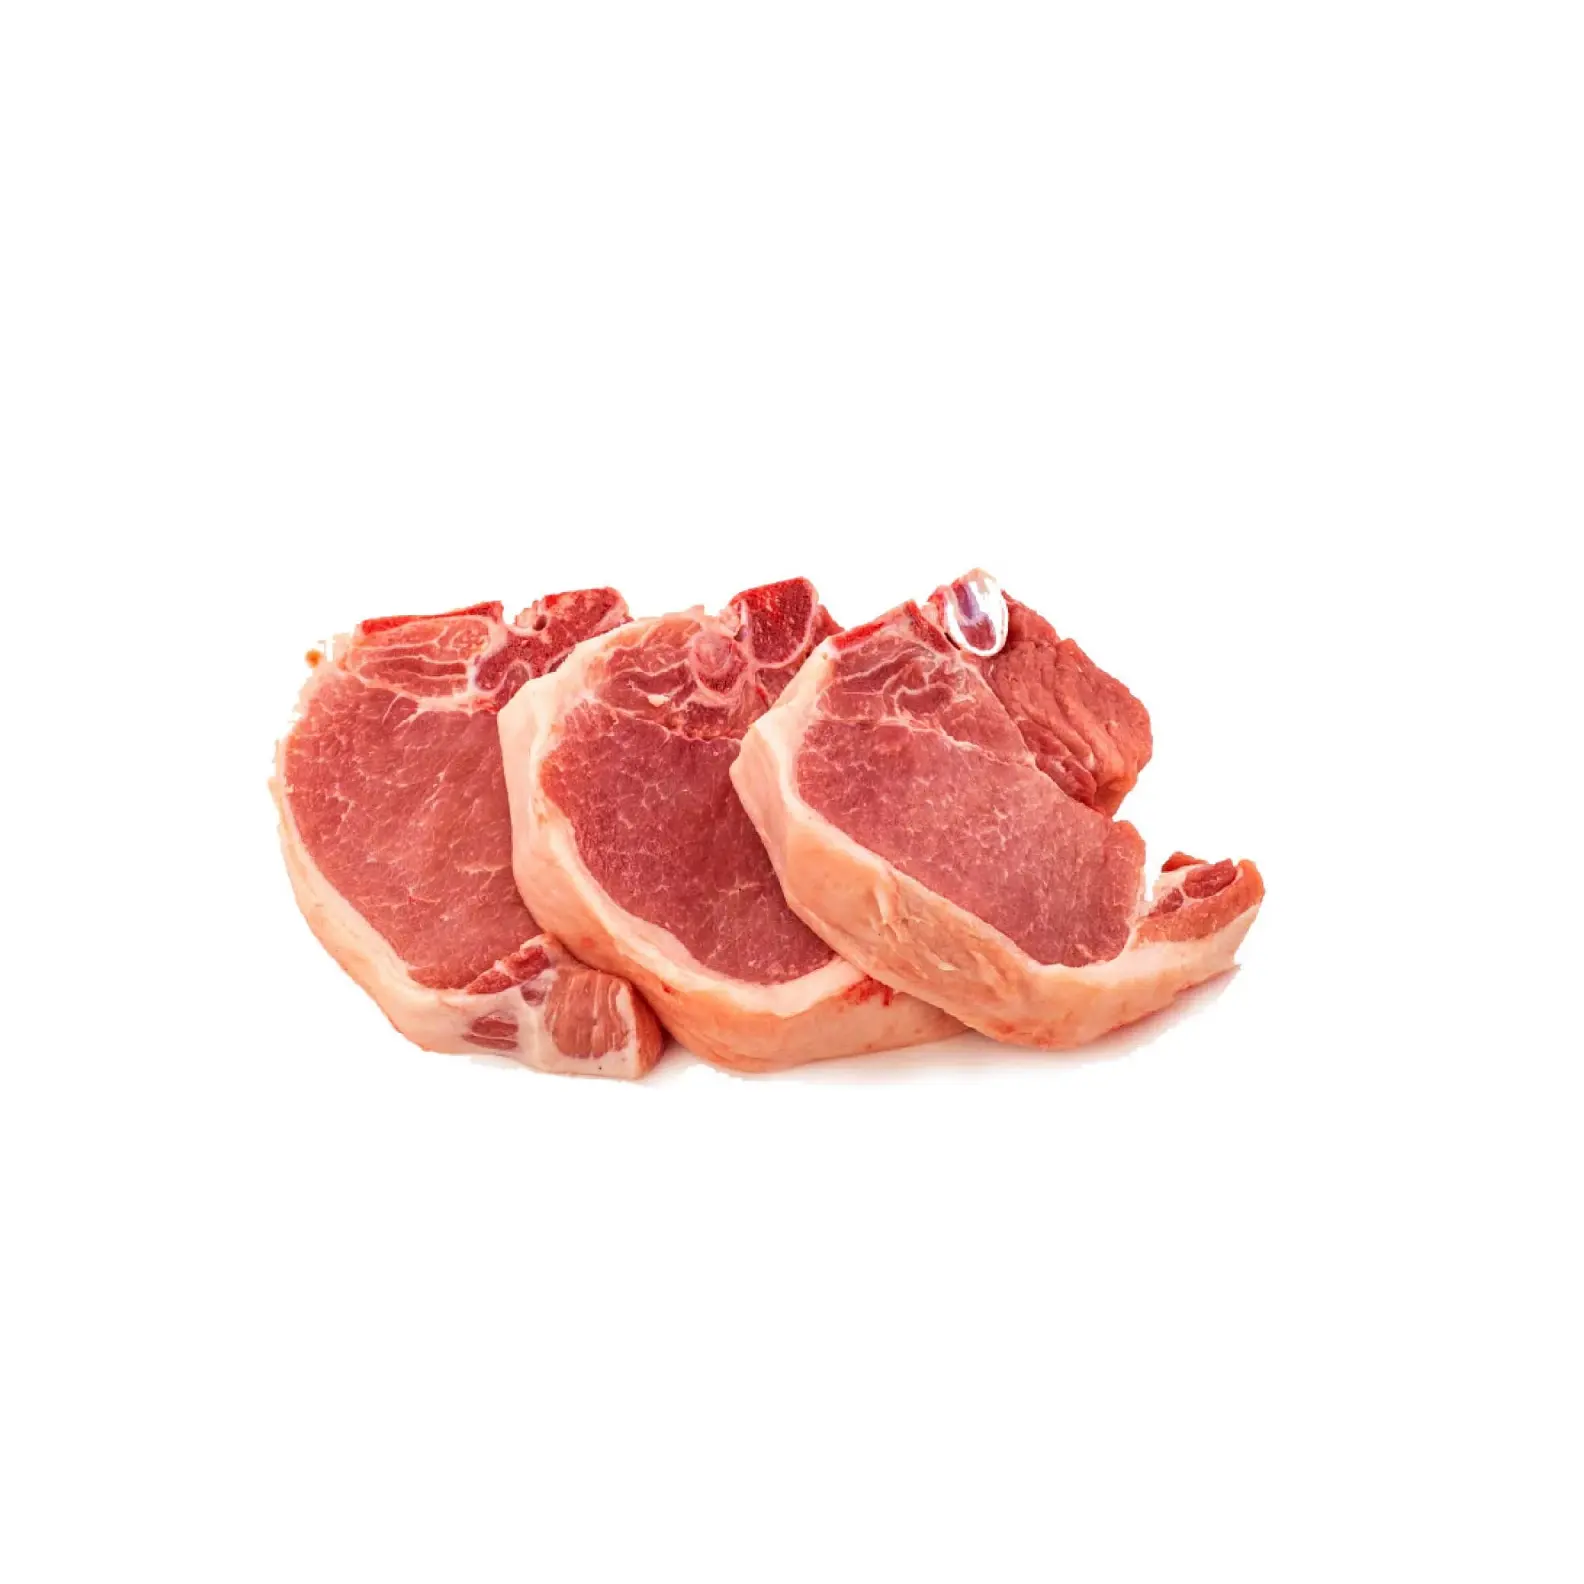 Plus haute qualité meilleur prix approvisionnement direct côtelette de porc désossée coupe centrale | côtelette de porc congelée sans os stock frais en vrac